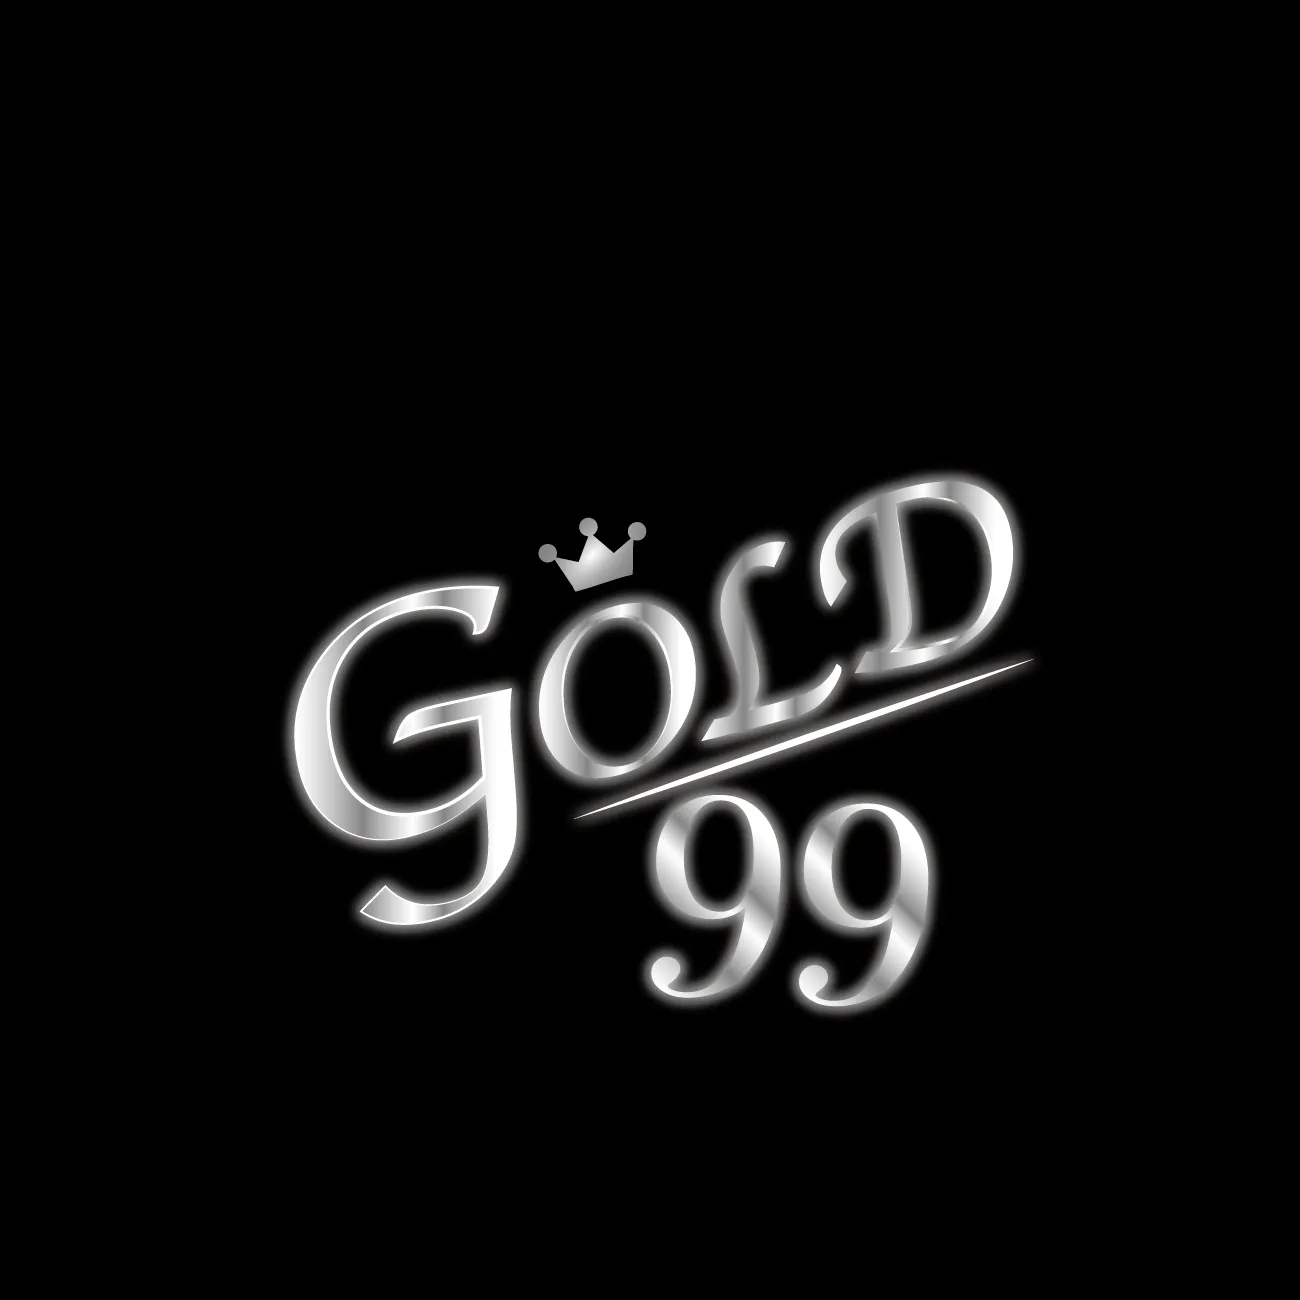 gold999 login